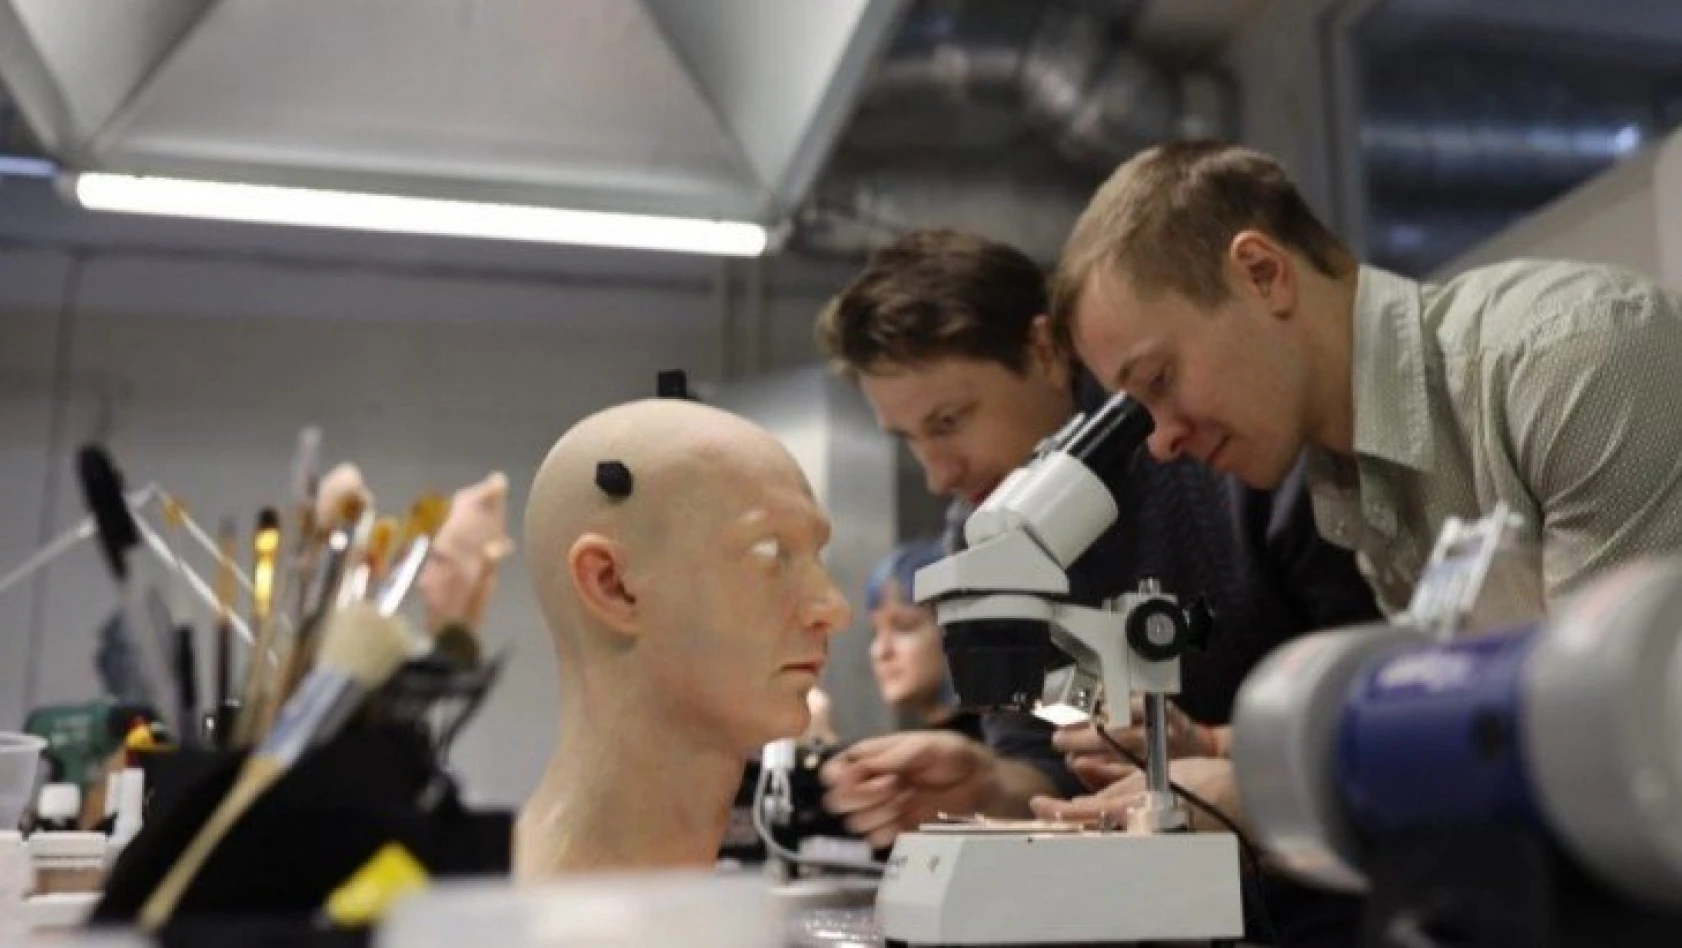 Rus Robot şirketi hiper-gerçekçi insansı robotlar geliştiriyor